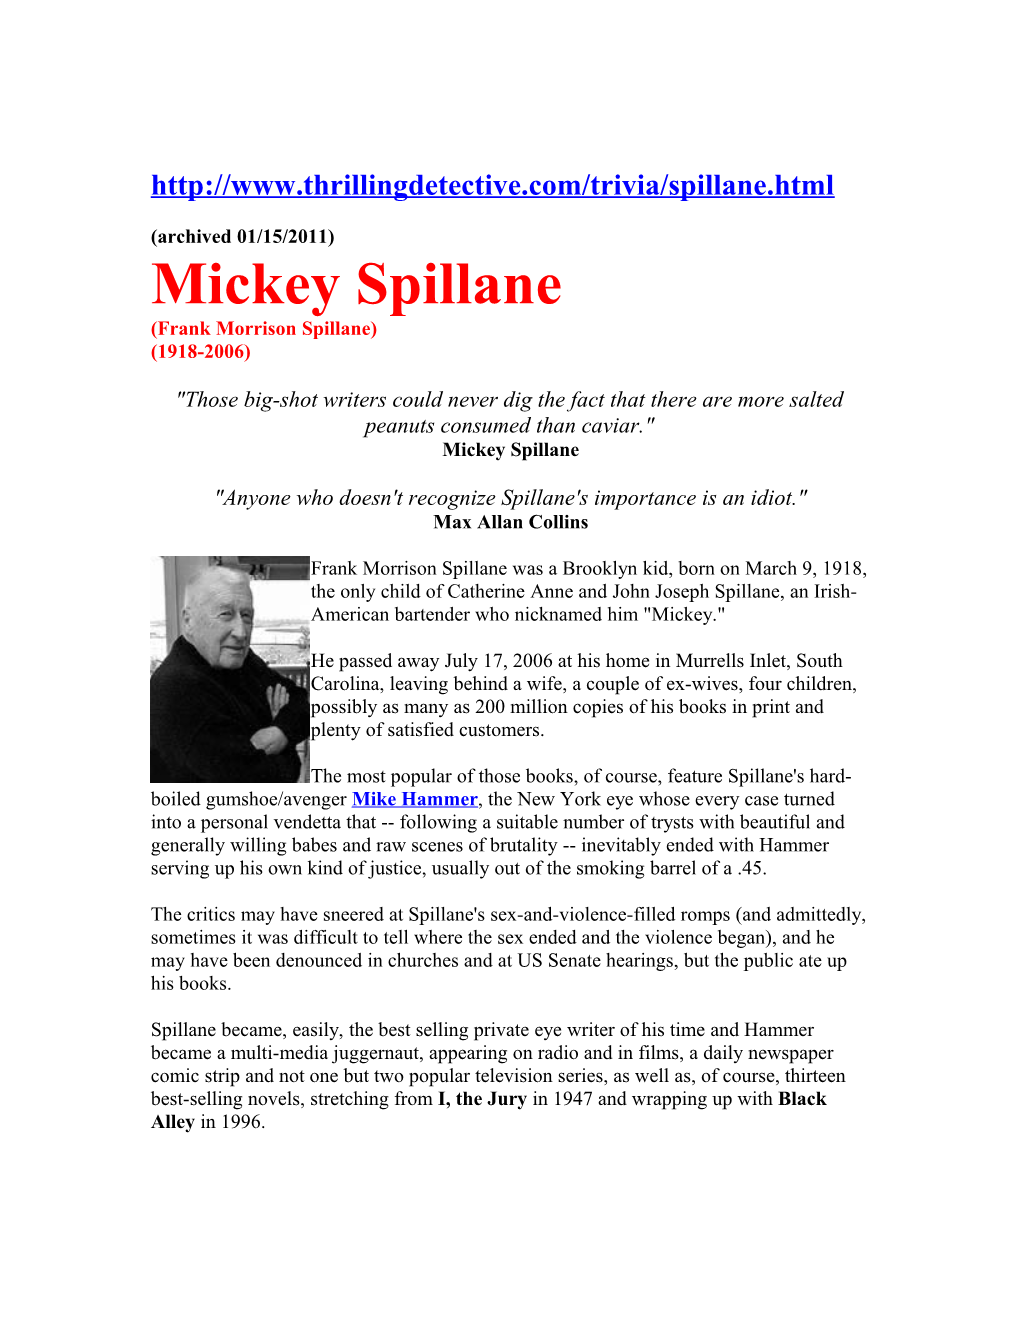 Mickey Spillane (Frank Morrison Spillane) (1918-2006)